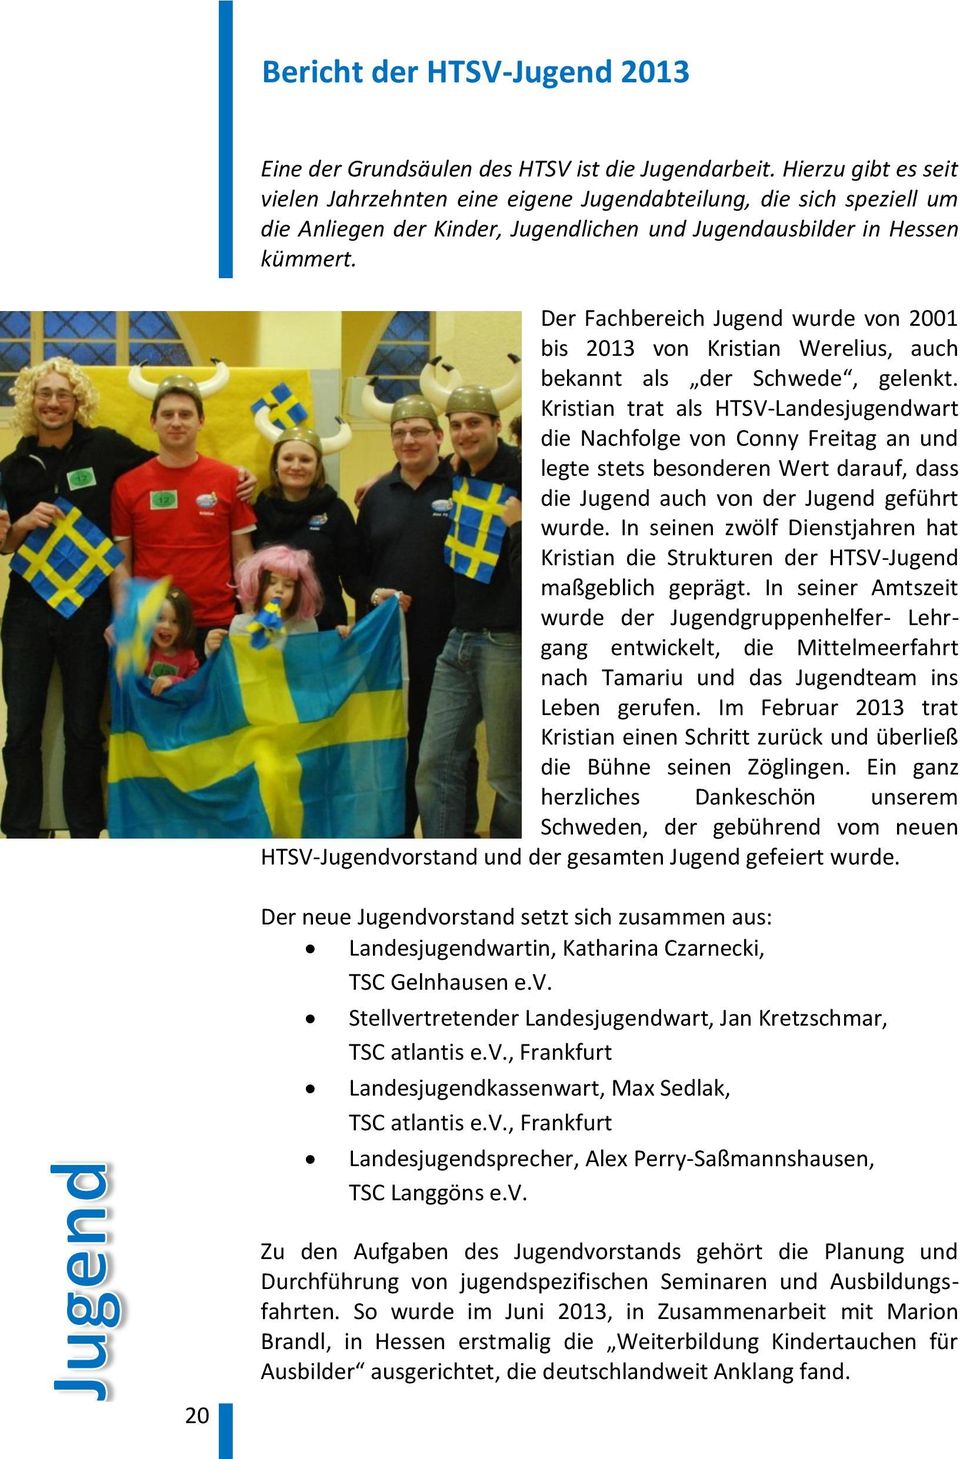 Der Fachbereich Jugend wurde von 2001 bis 2013 von Kristian Werelius, auch bekannt als der Schwede, gelenkt.